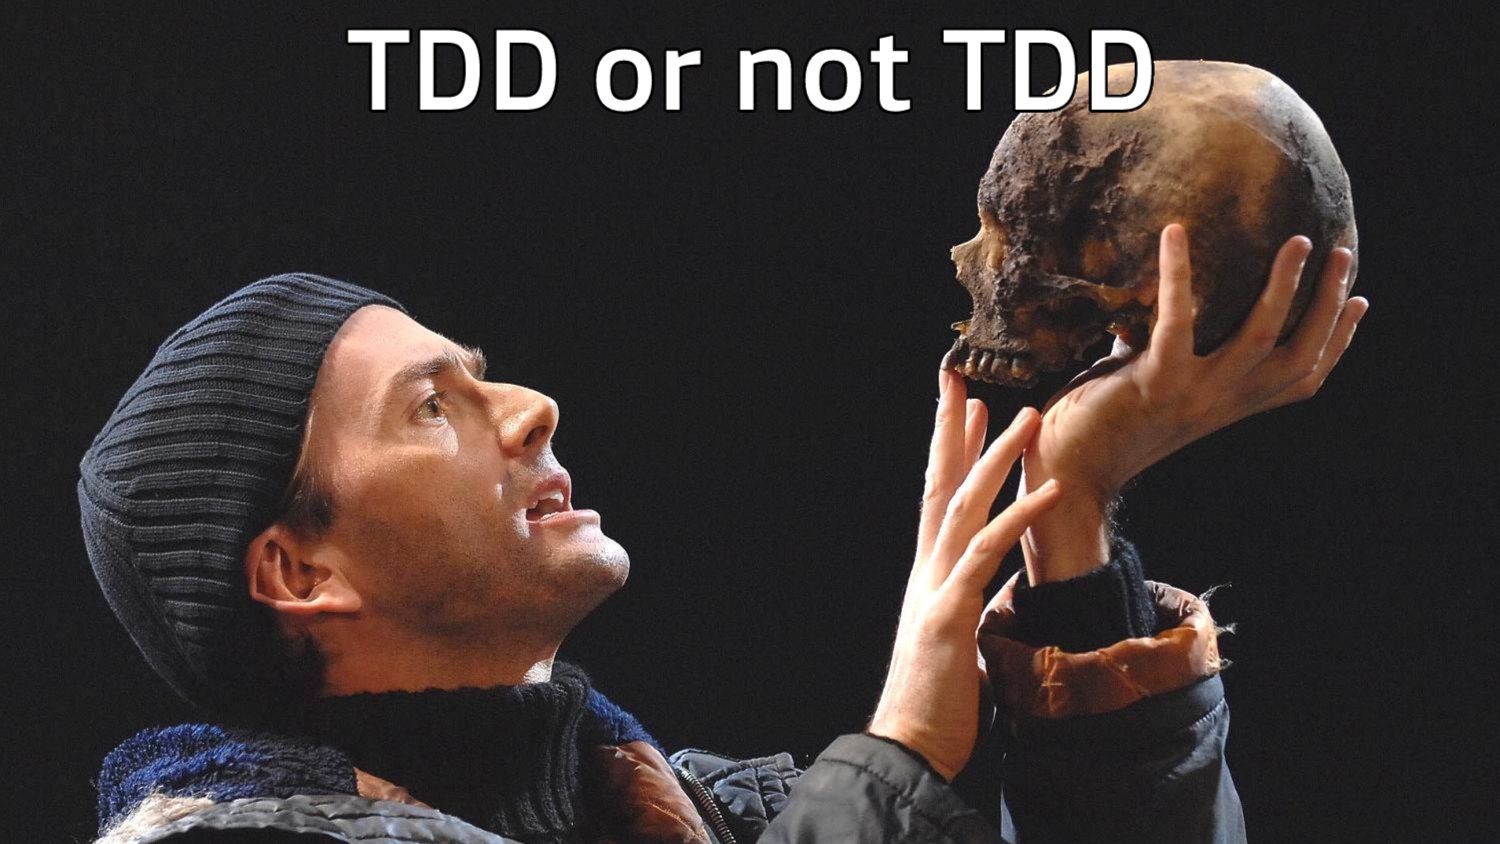 TDD or not TDD?